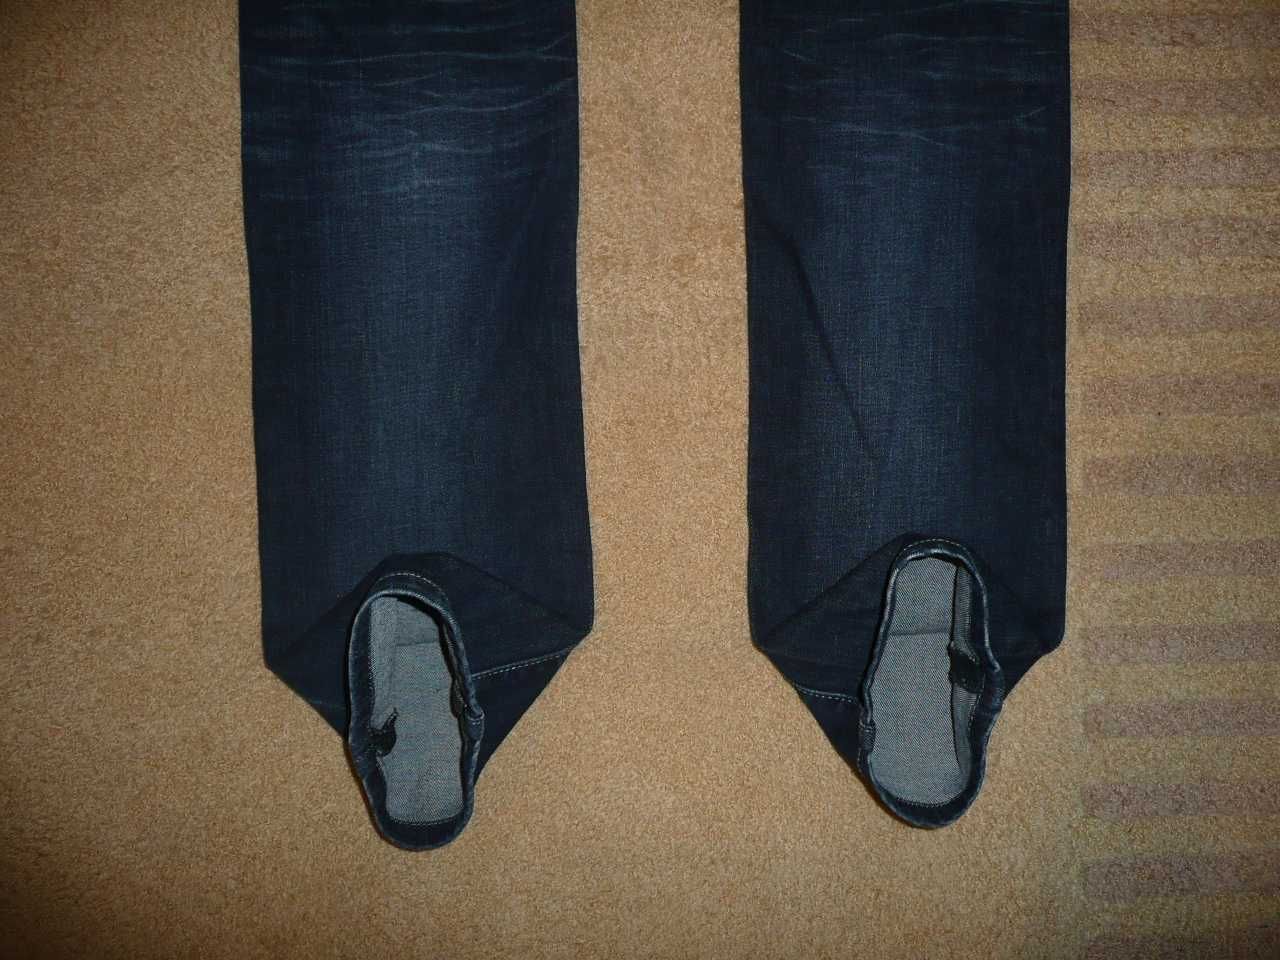 Spodnie dżinsy BIG STAR W32/L34=43,5/111cm jeansy